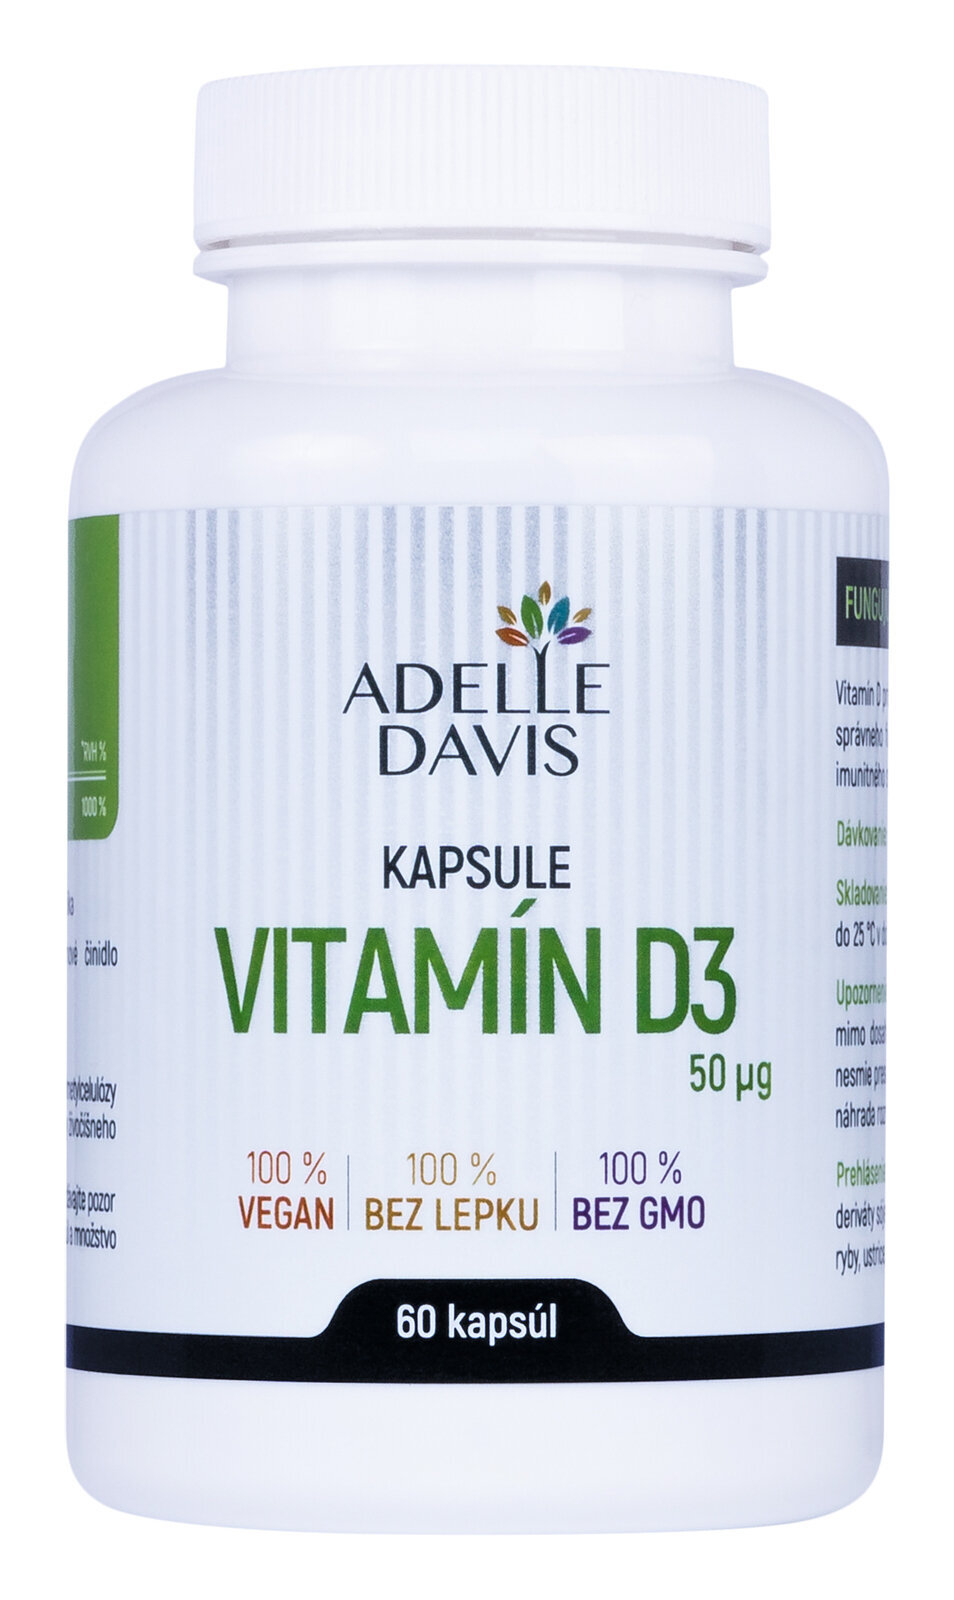 Vitamin D Adelle Davis Vitamin D3 60 Capsules Vitamin D